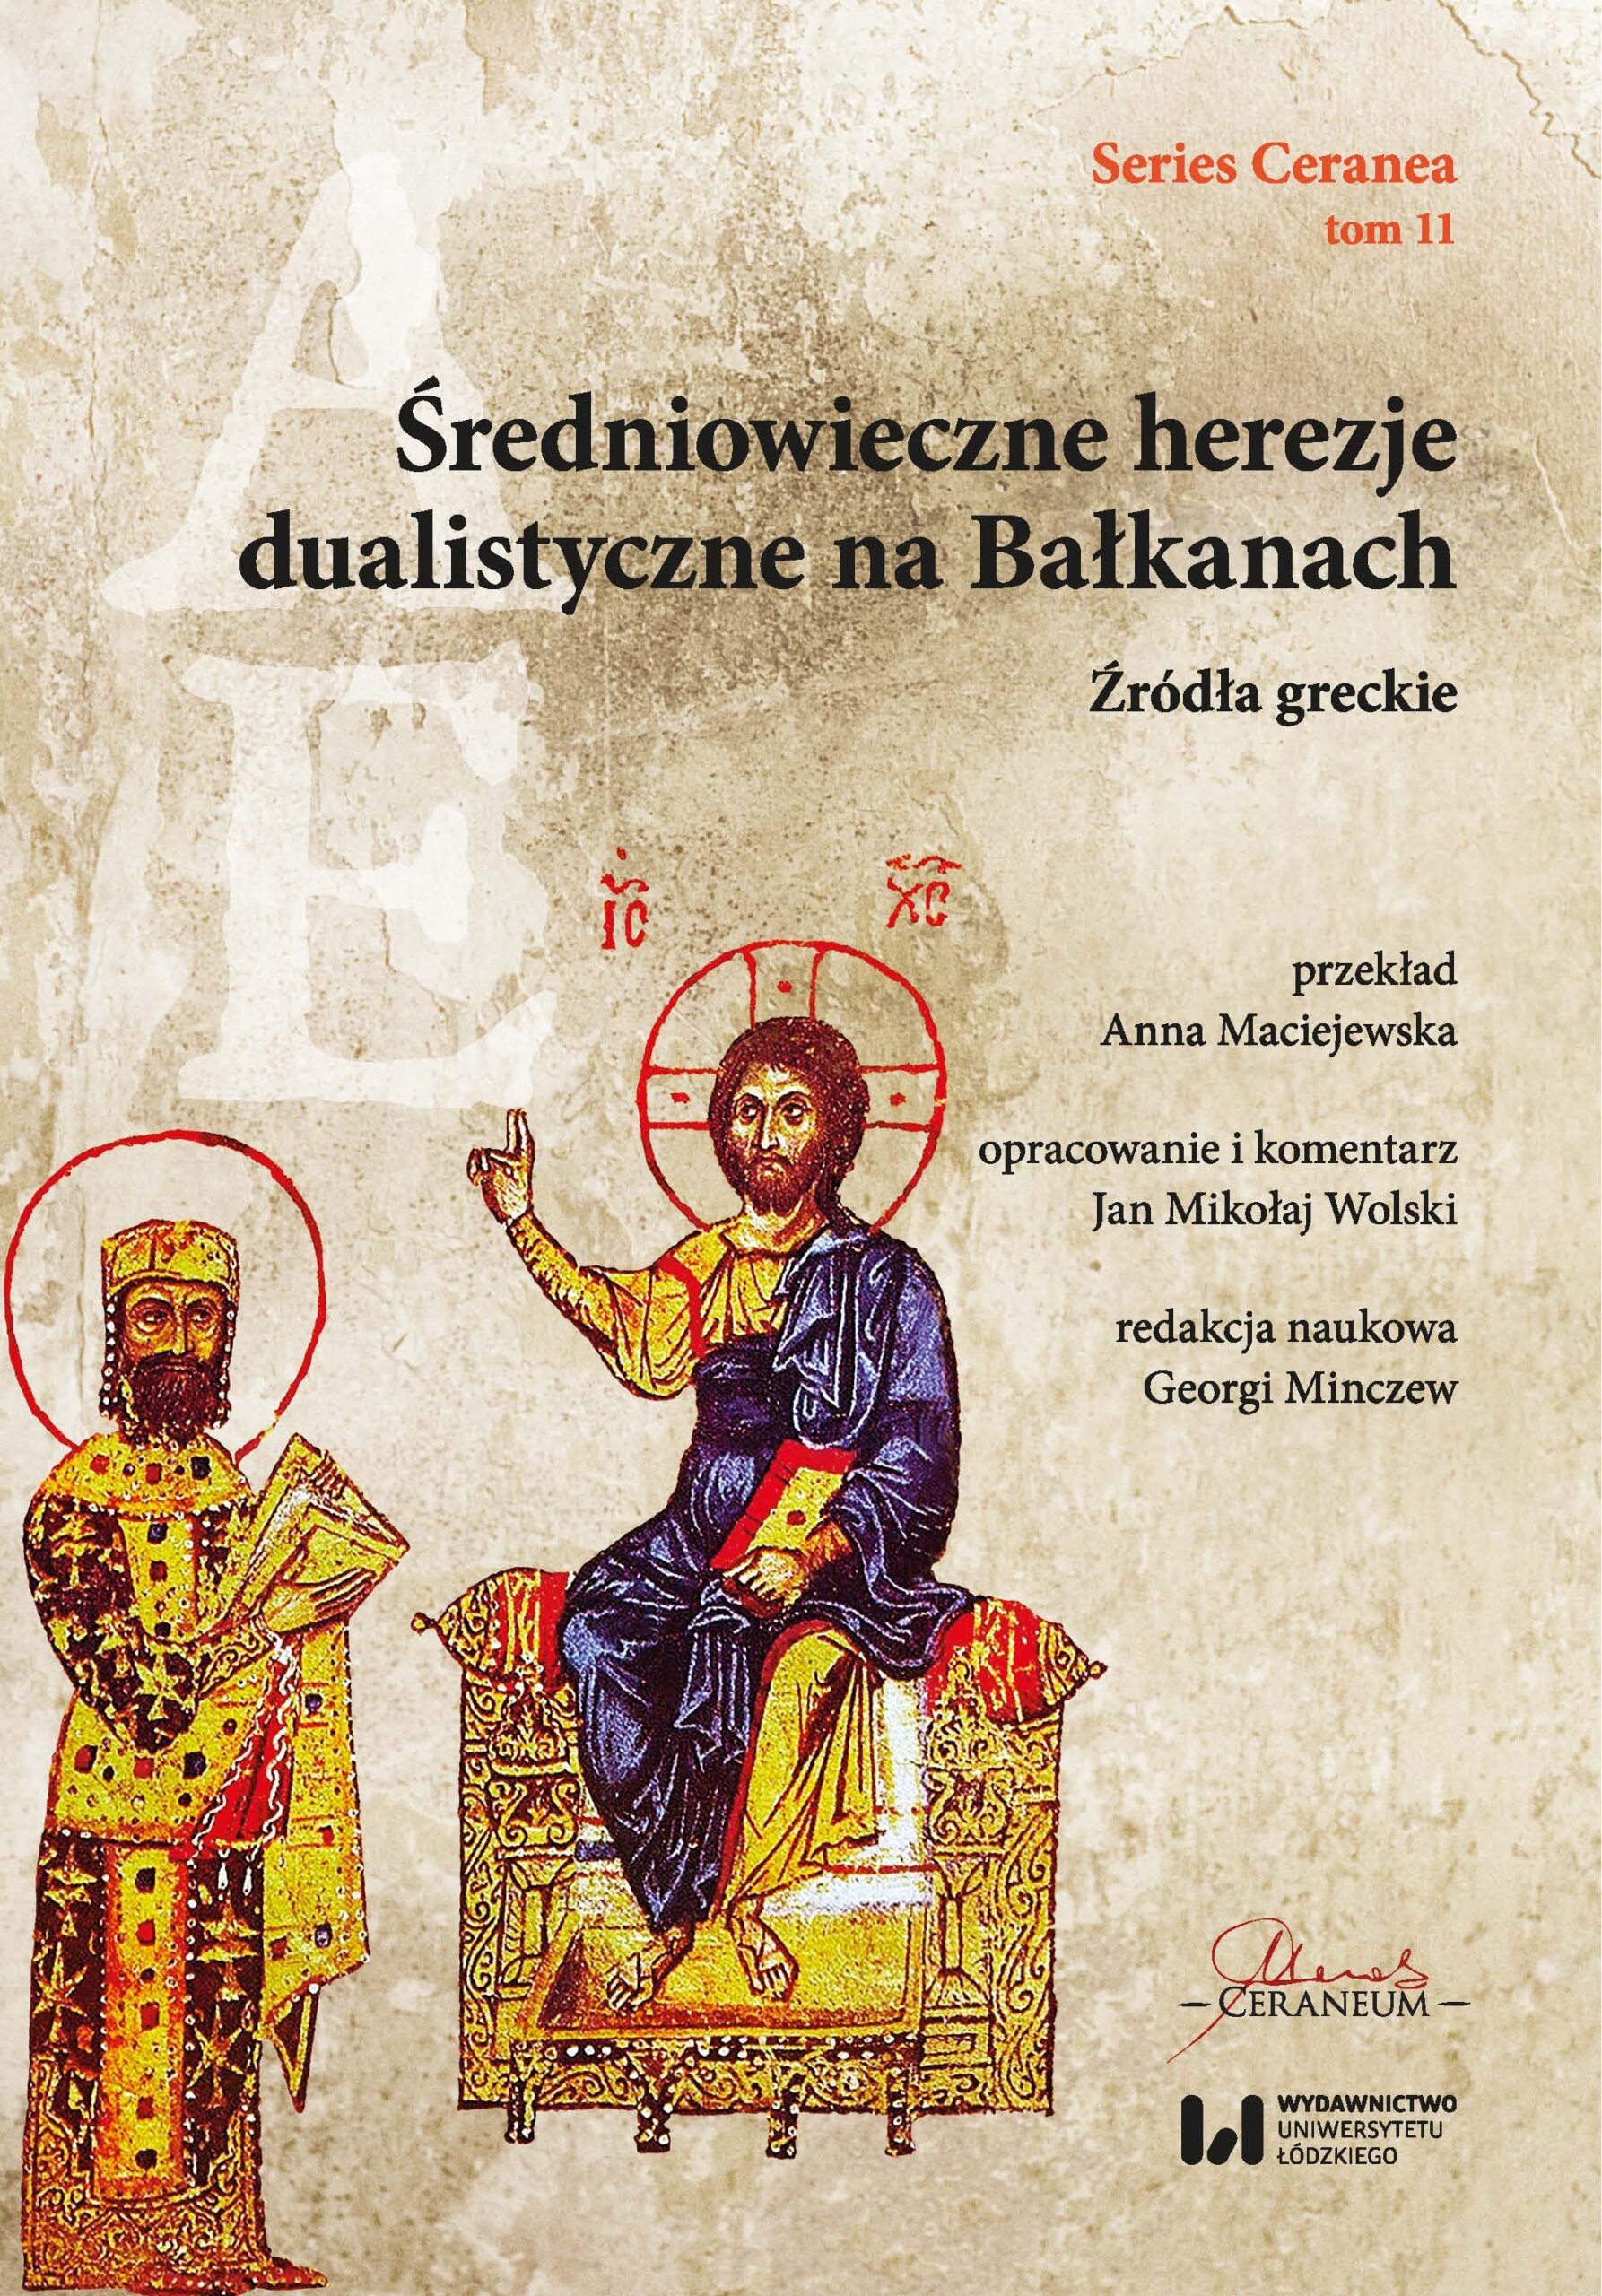 Średniowieczne herezje dualistyczne na Bałkanach : W jedenastym tomie serii Series Ceranea ukazują się polskie przekłady źródeł greckich do dziejów średniowiecznych doktryn dualistycznych na Bałkanach.